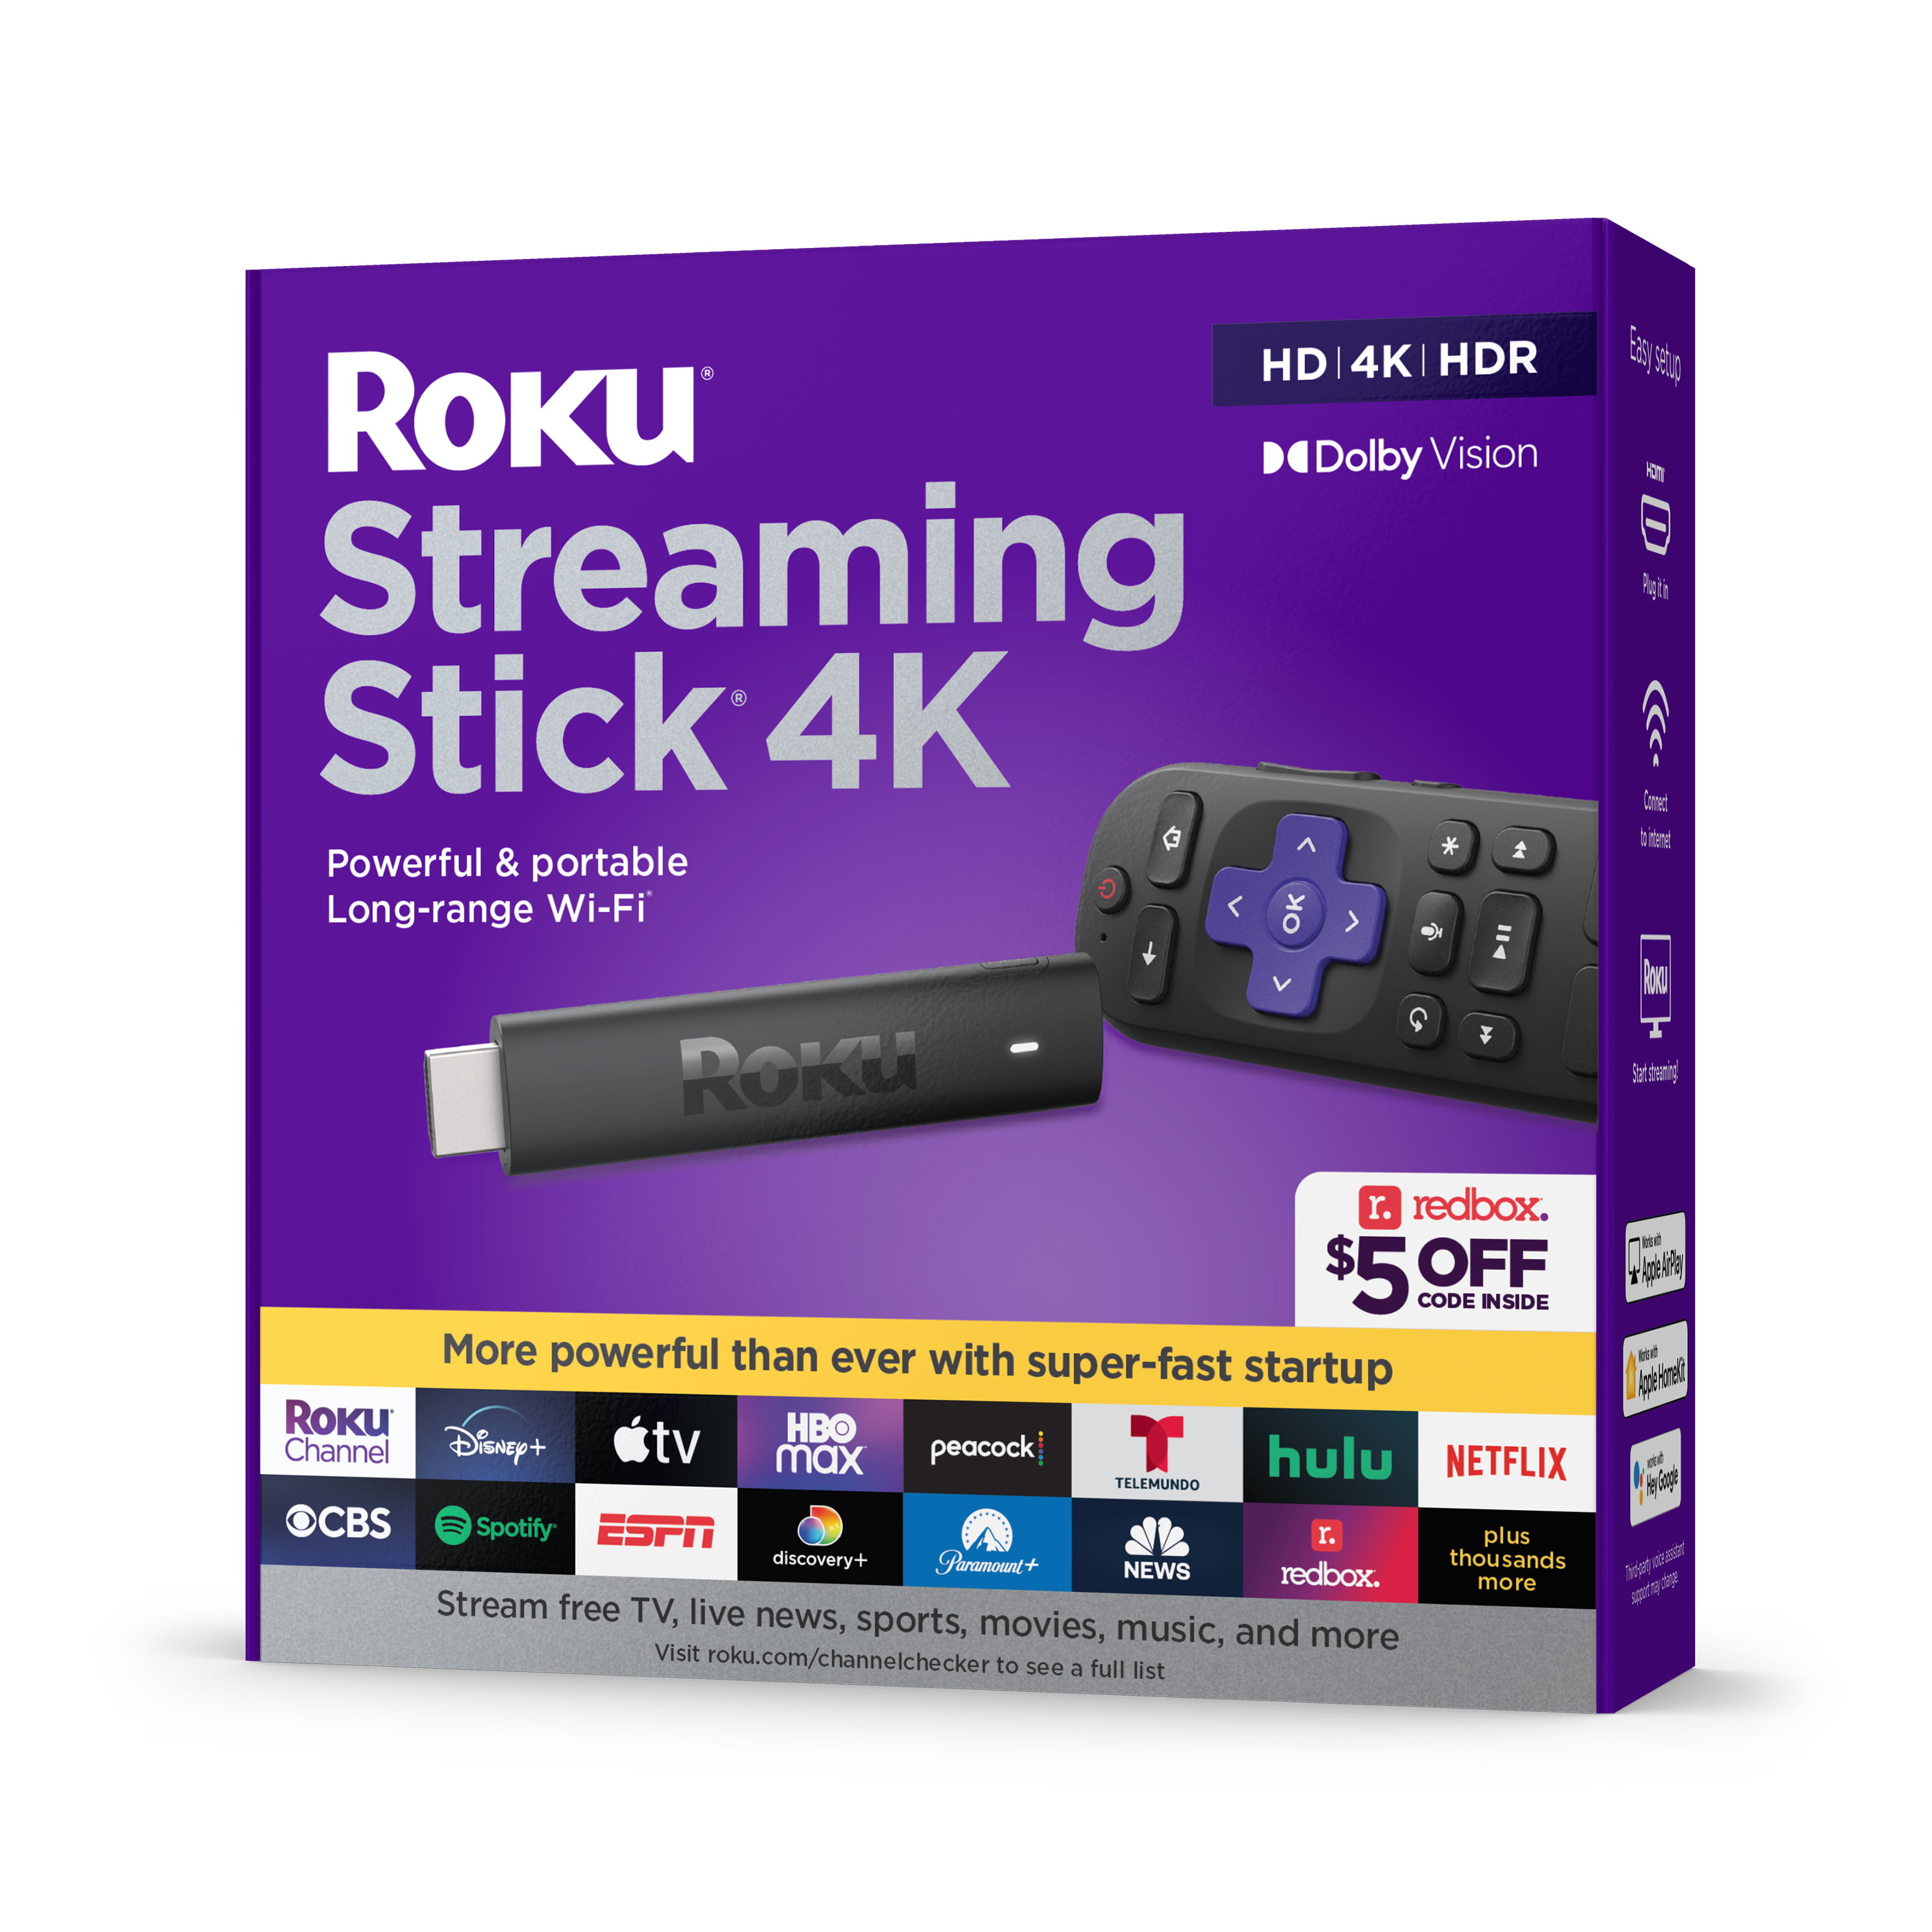 Roku 4k Streaming Stick $35.45